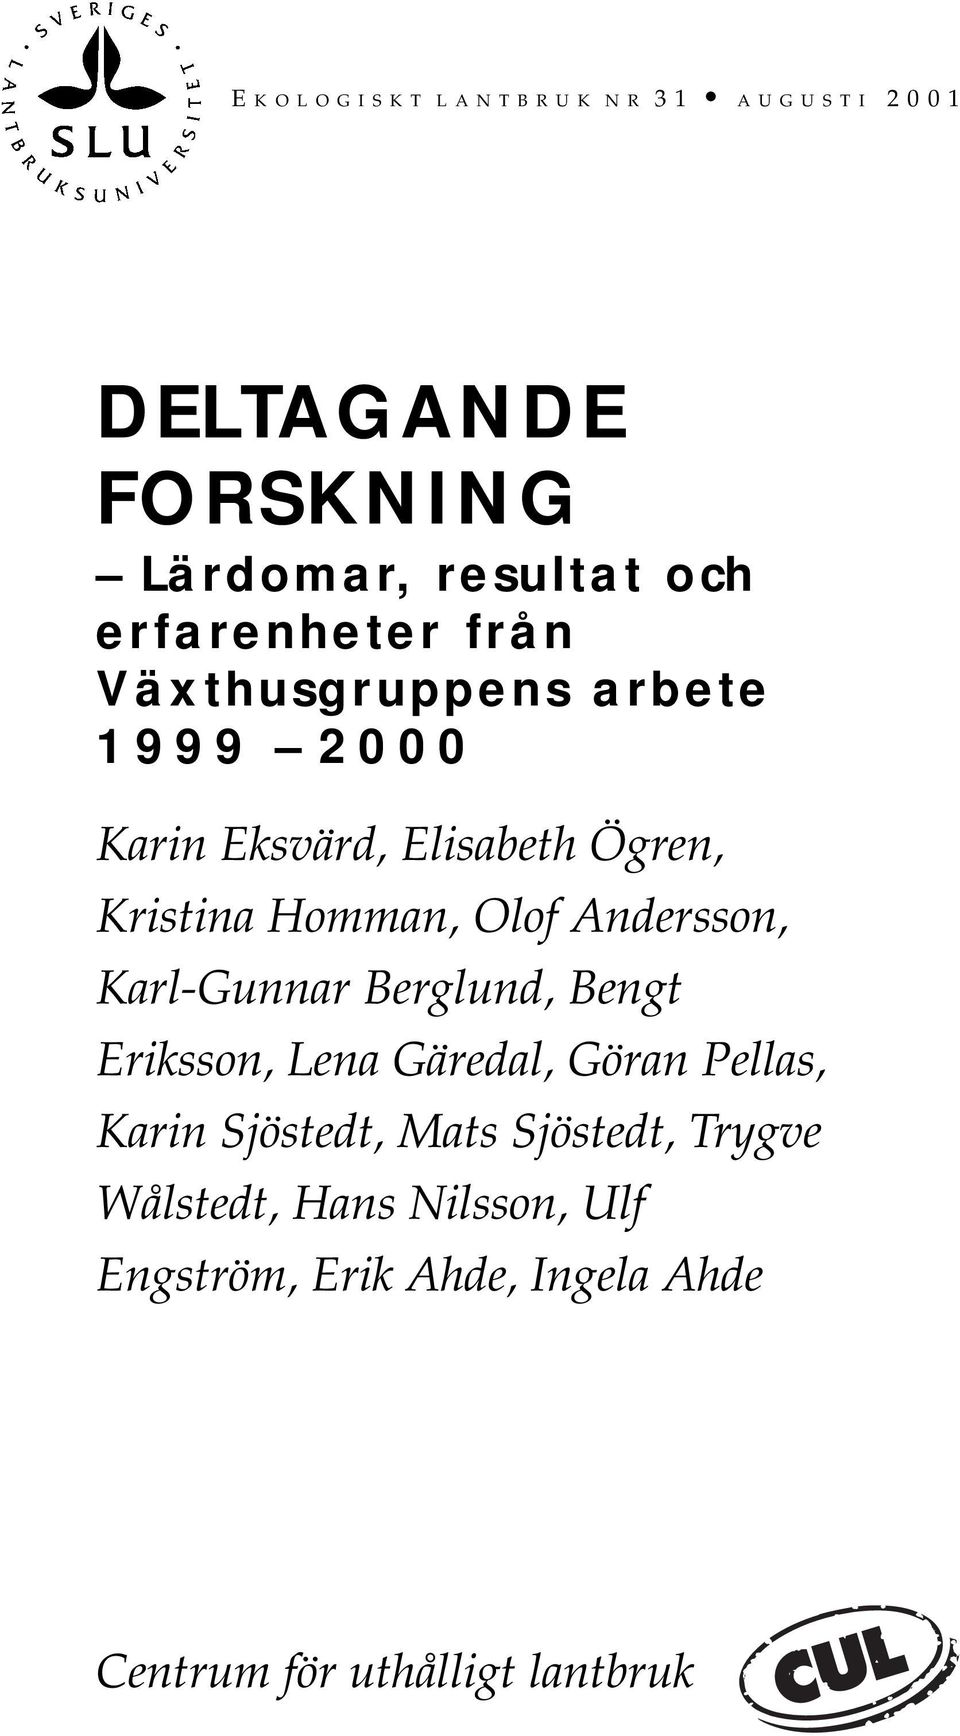 Olof Andersson, Karl-Gunnar Berglund, Bengt Eriksson, Lena Gäredal, Göran Pellas, Karin Sjöstedt, Mats